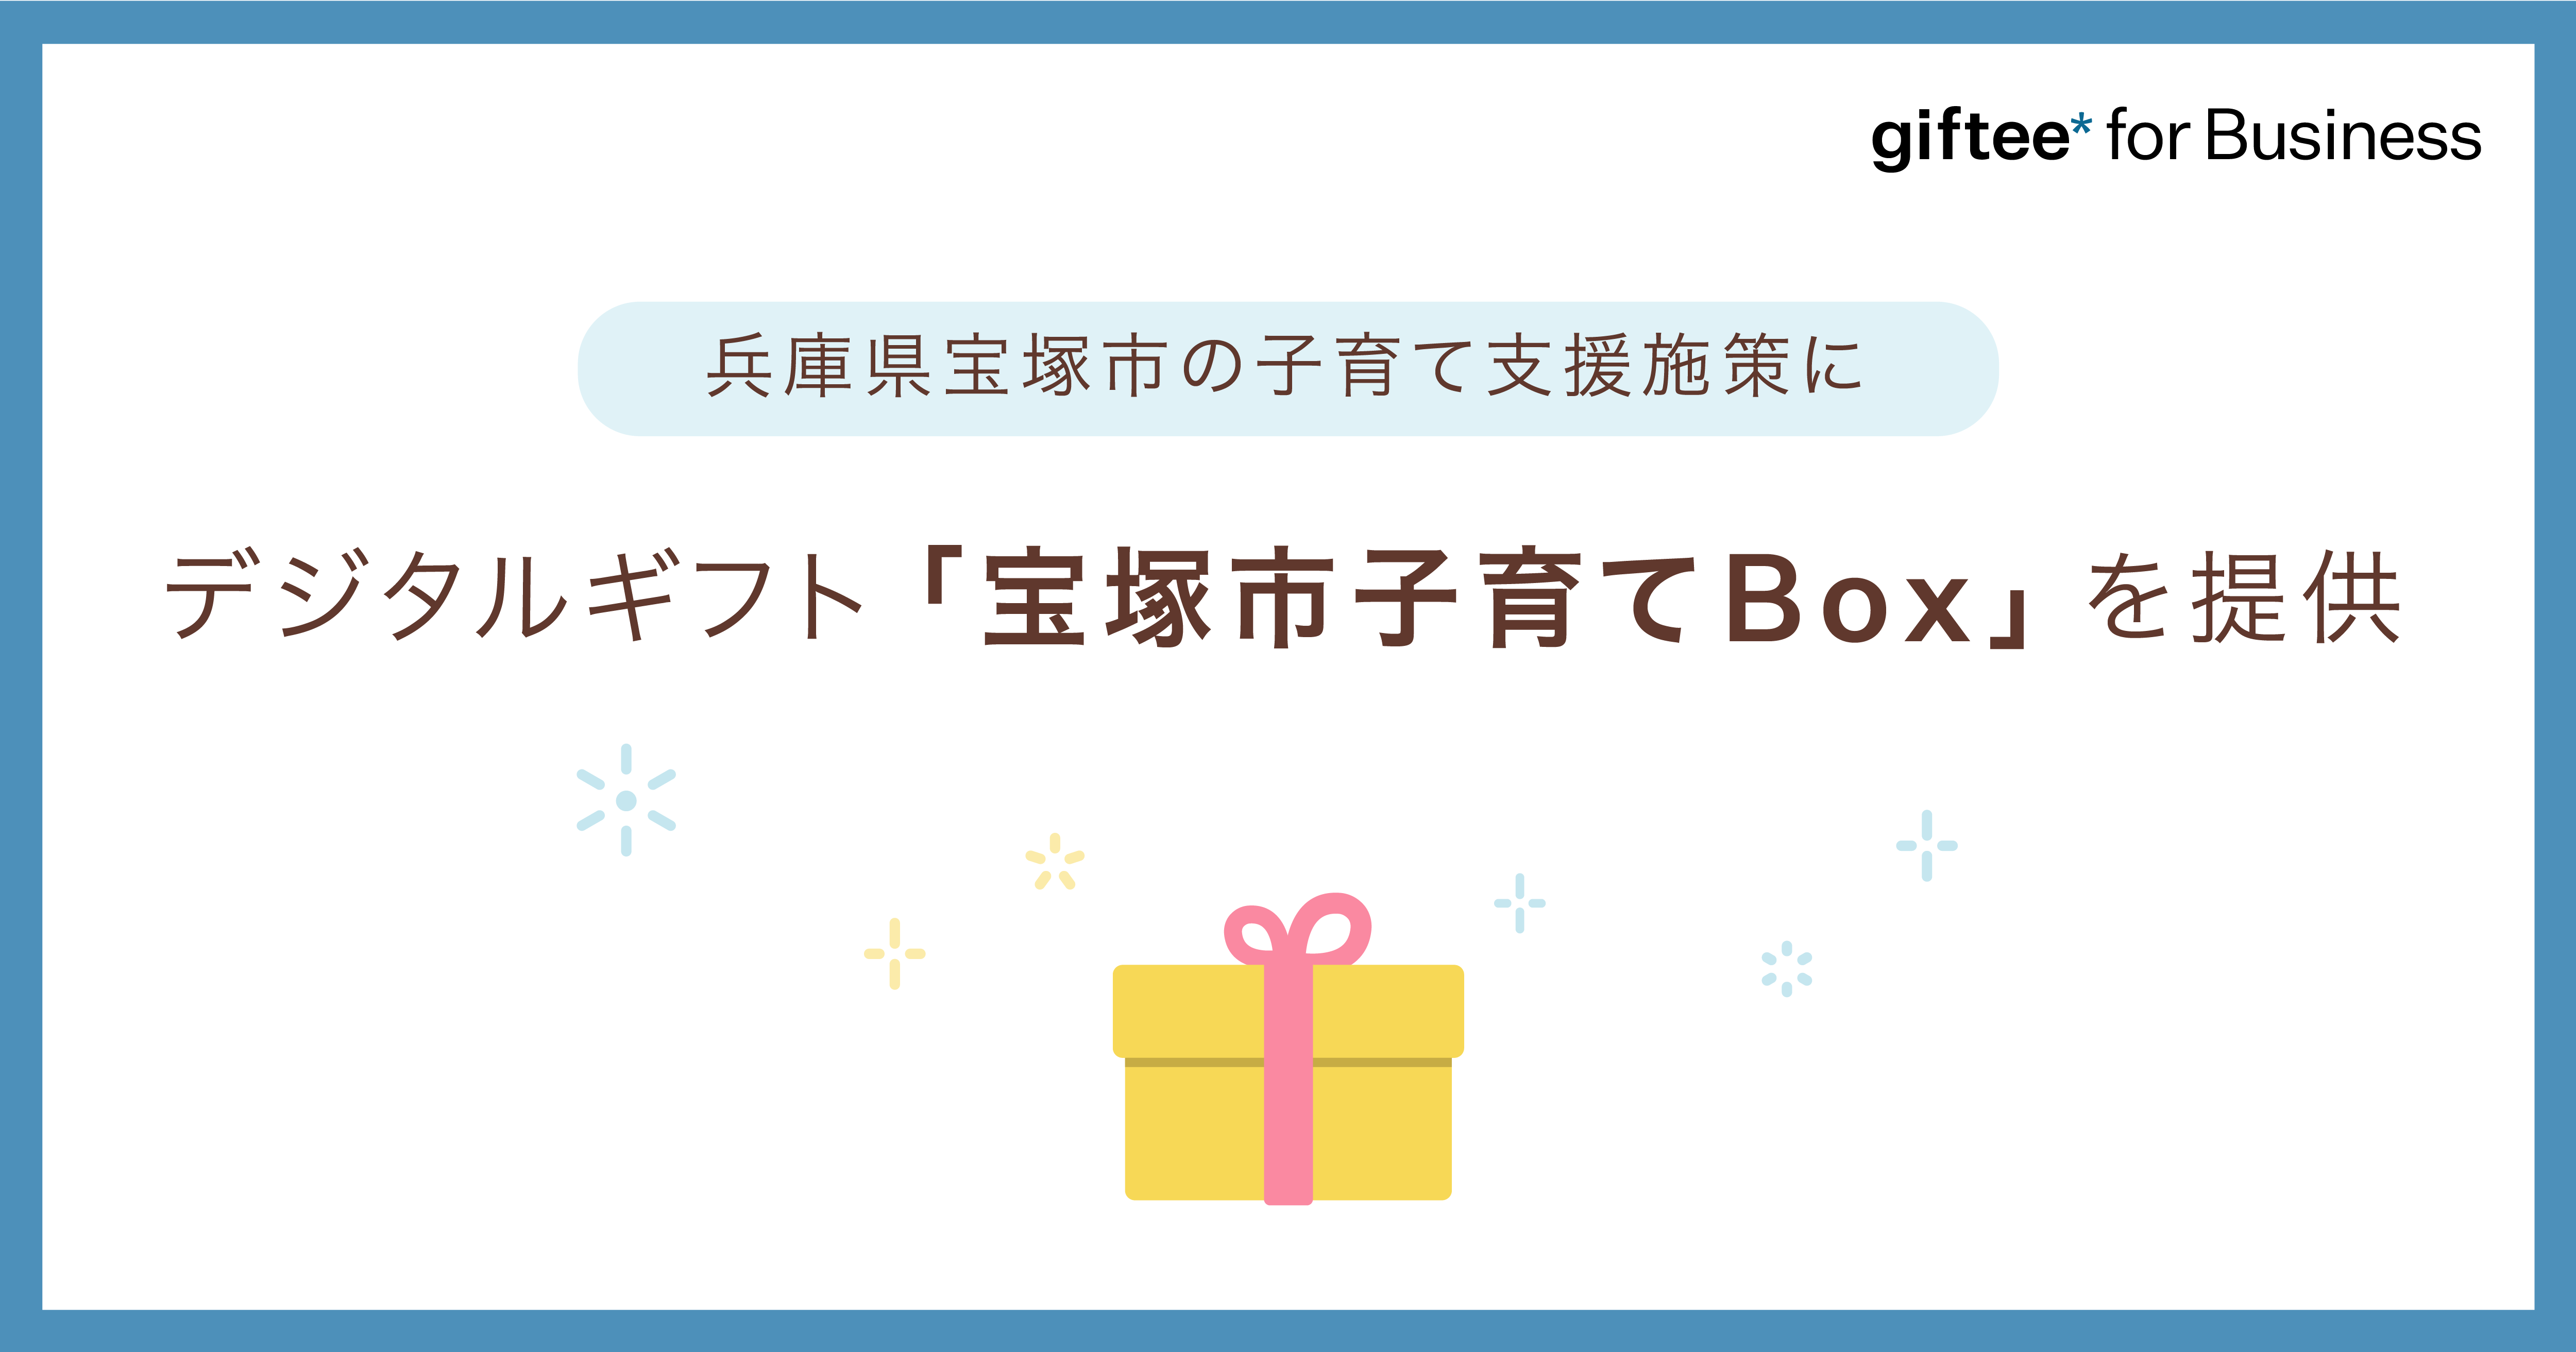 兵庫県宝塚市、子育て支援としてデジタルギフト「宝塚市子育てBox」を提供[ニュース]